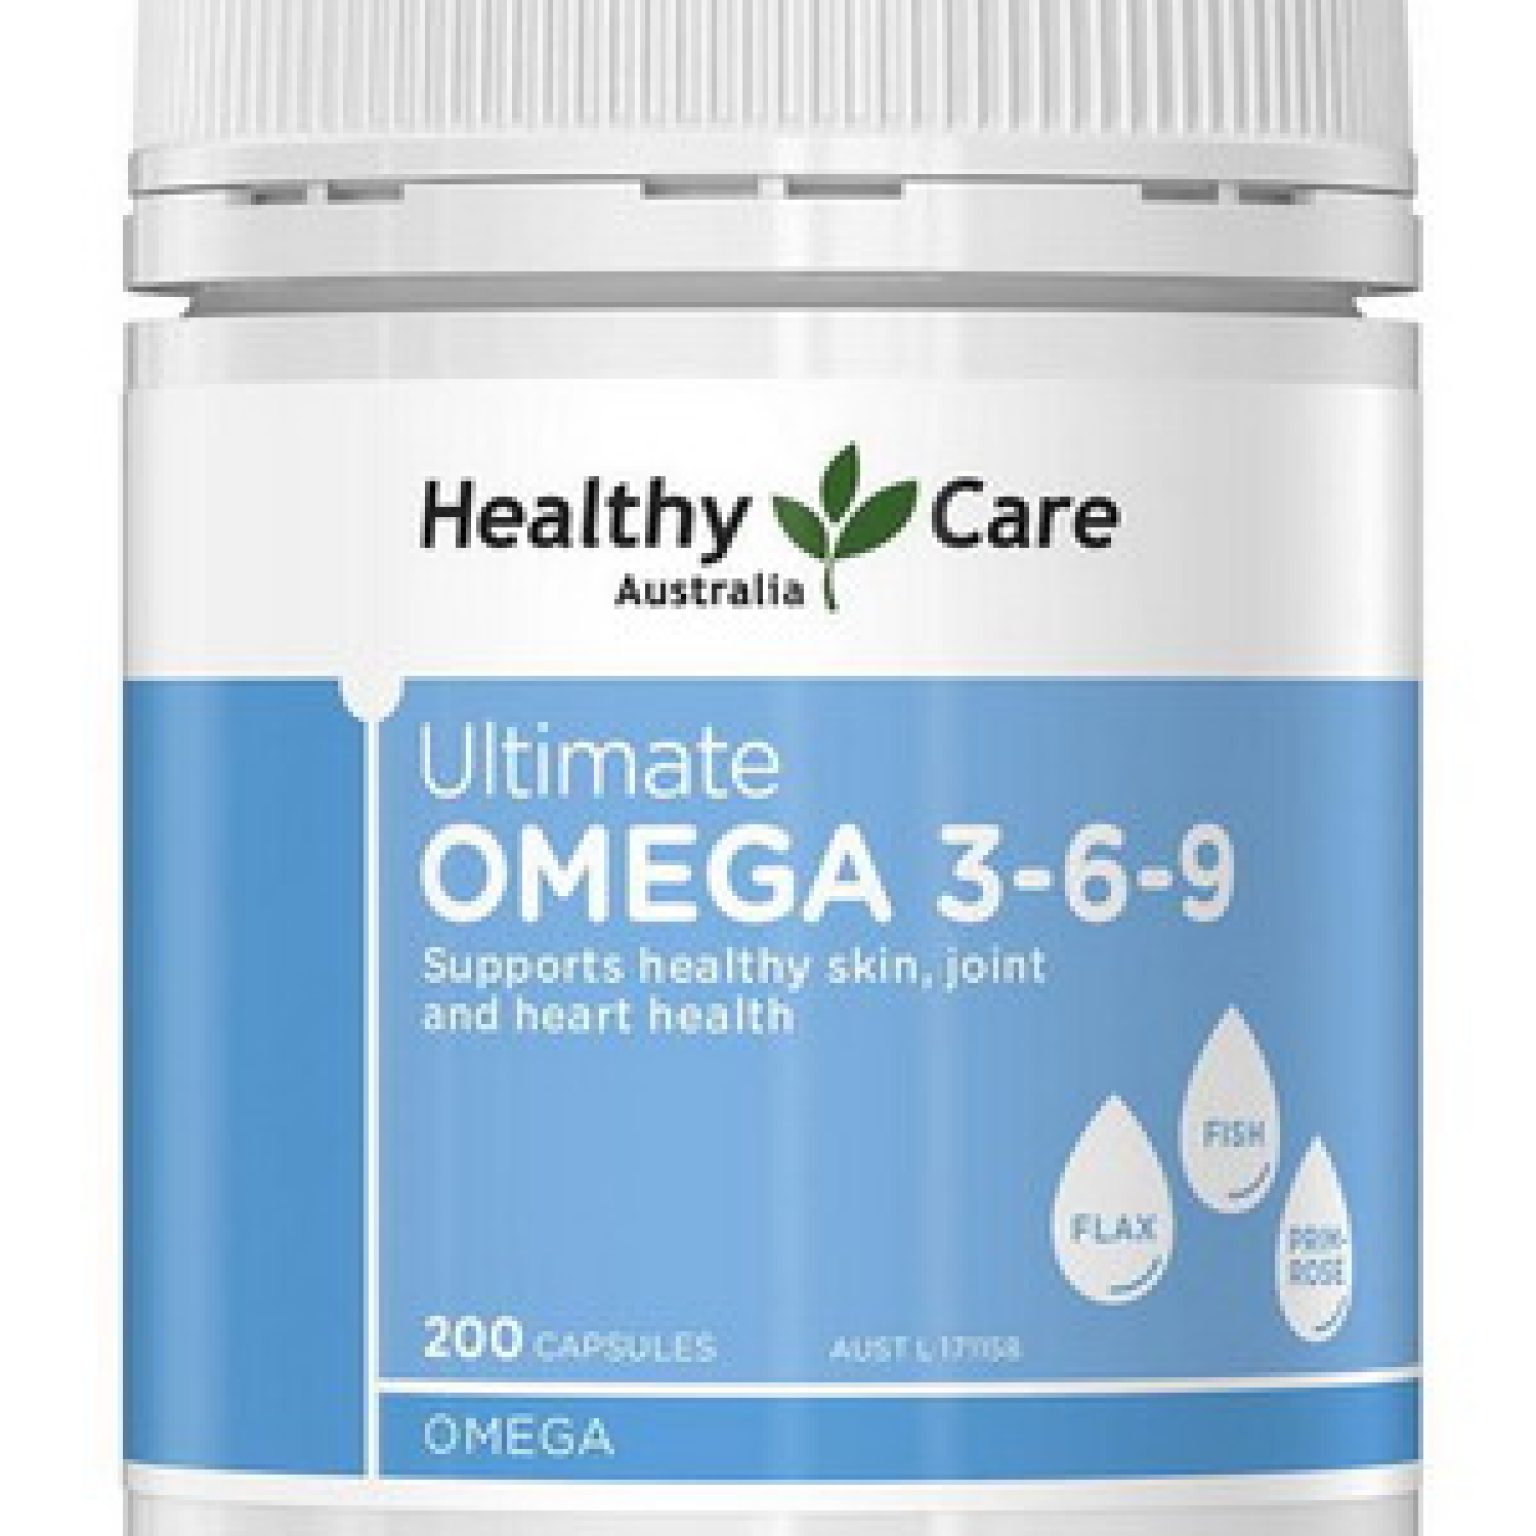 Ultimate Hmega 3-6-9 Healthy Care